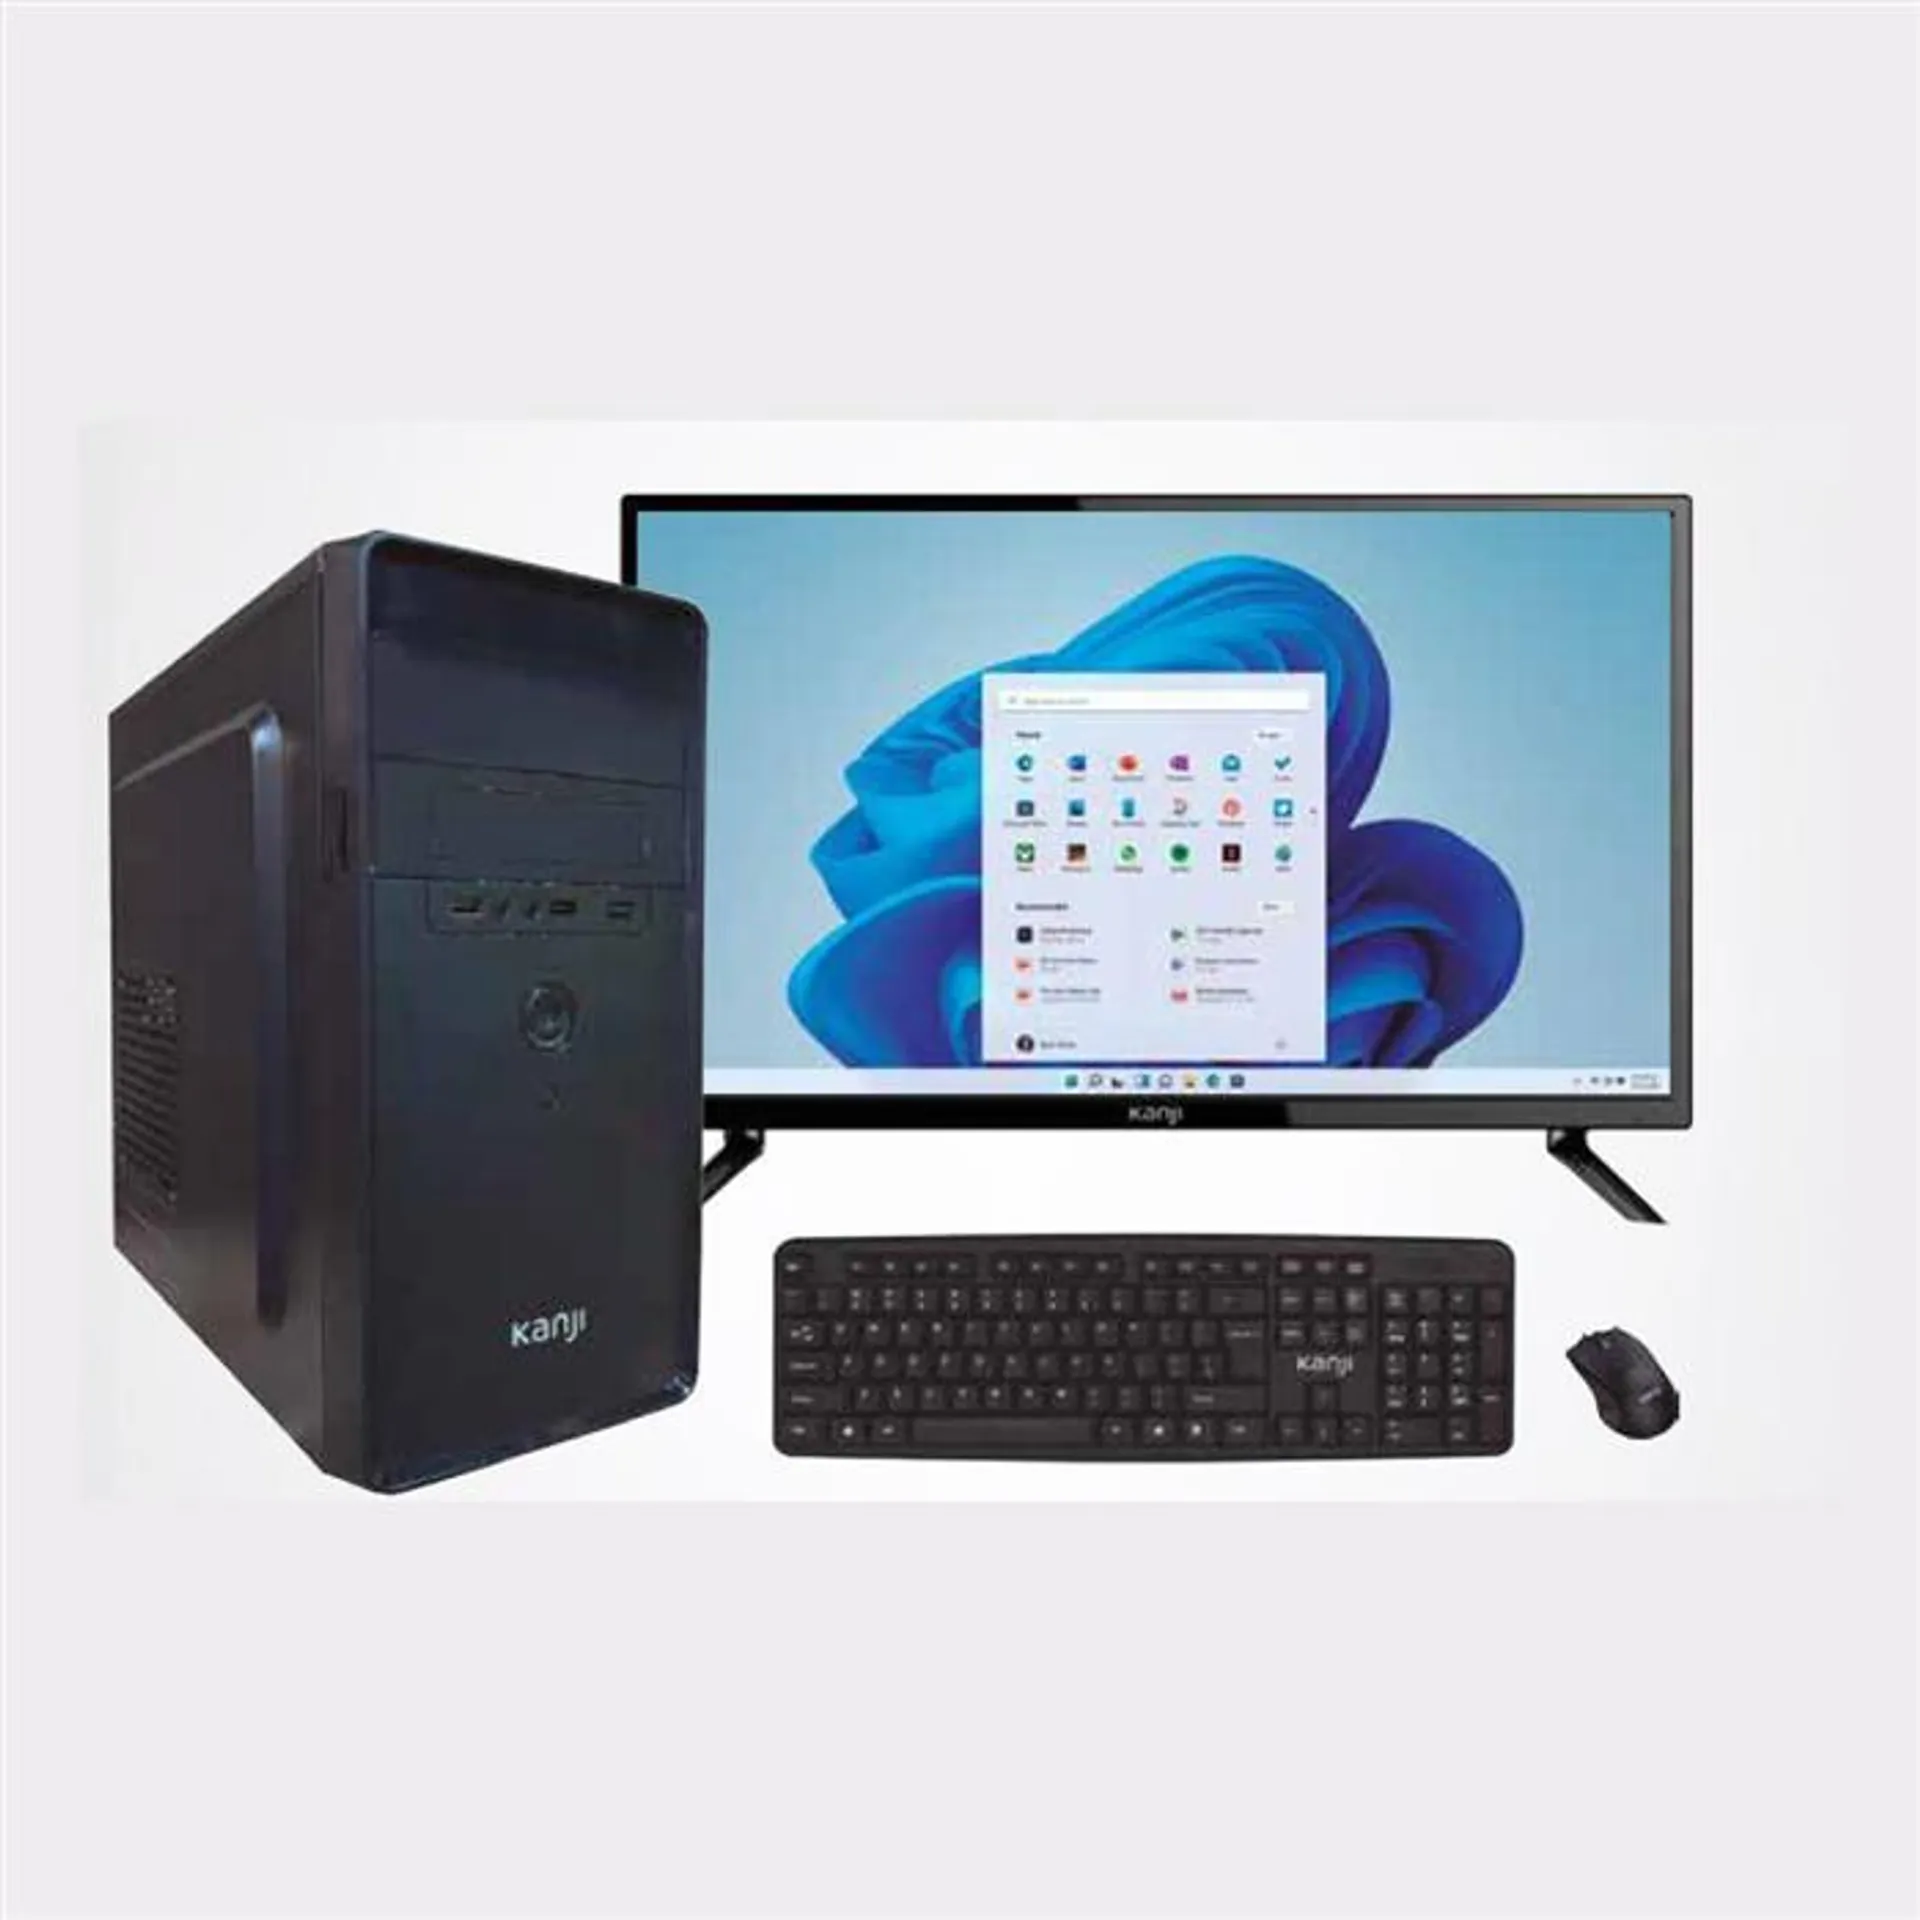 PC ARMADA COMPLETA KANJI i3-12100 8GB SSD 480GB WINDOWS 11 MONITOR TV 24" KJ-24MT005